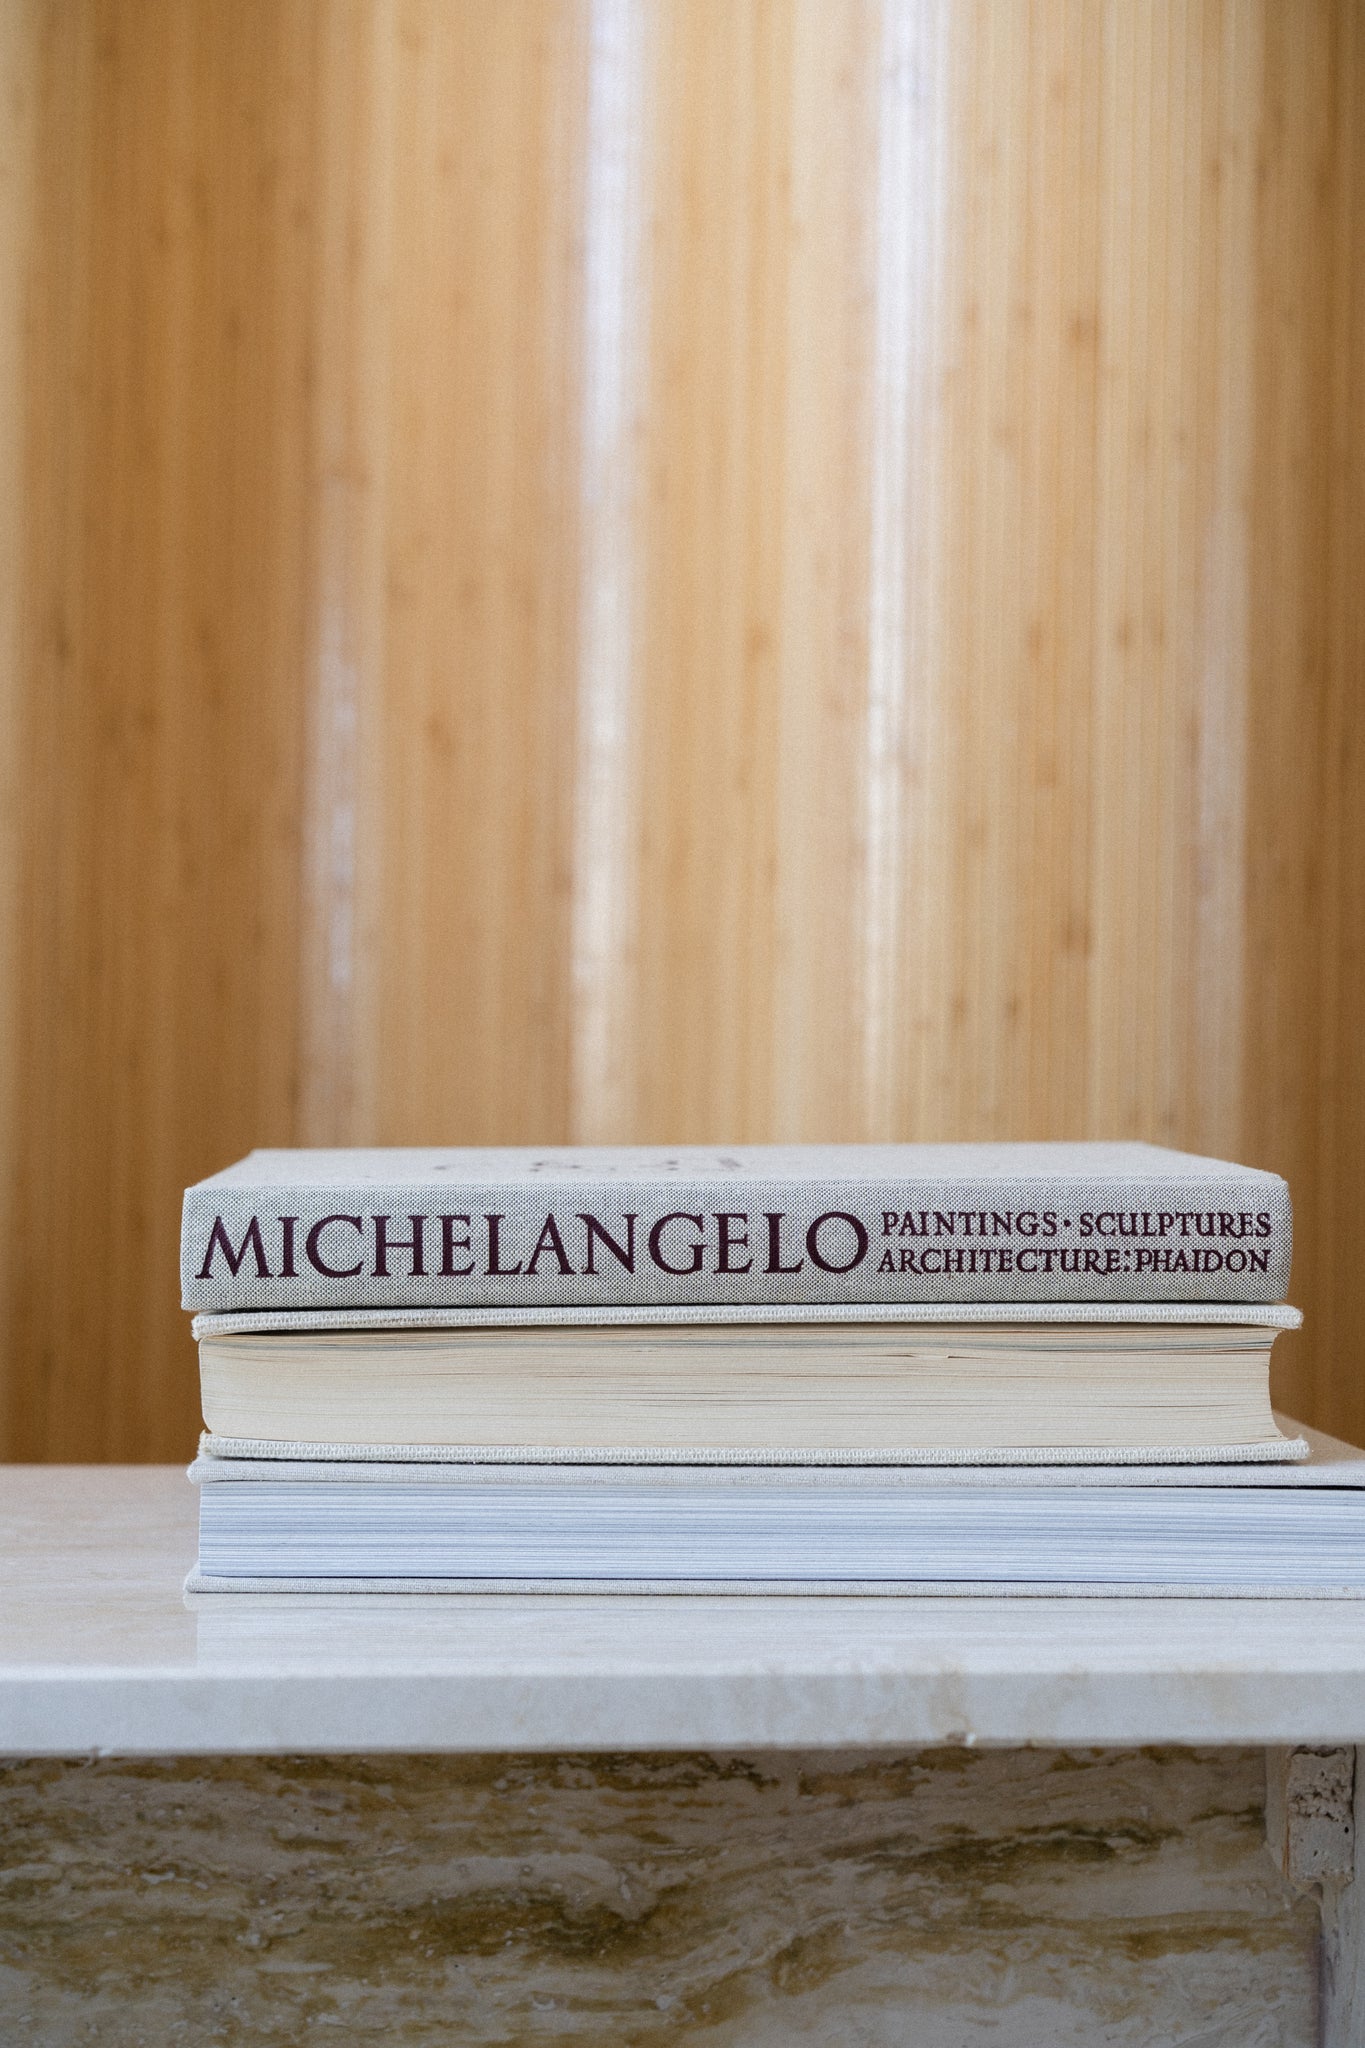 Michelangelo: Paintings, Sculptures, Architecture (1964)